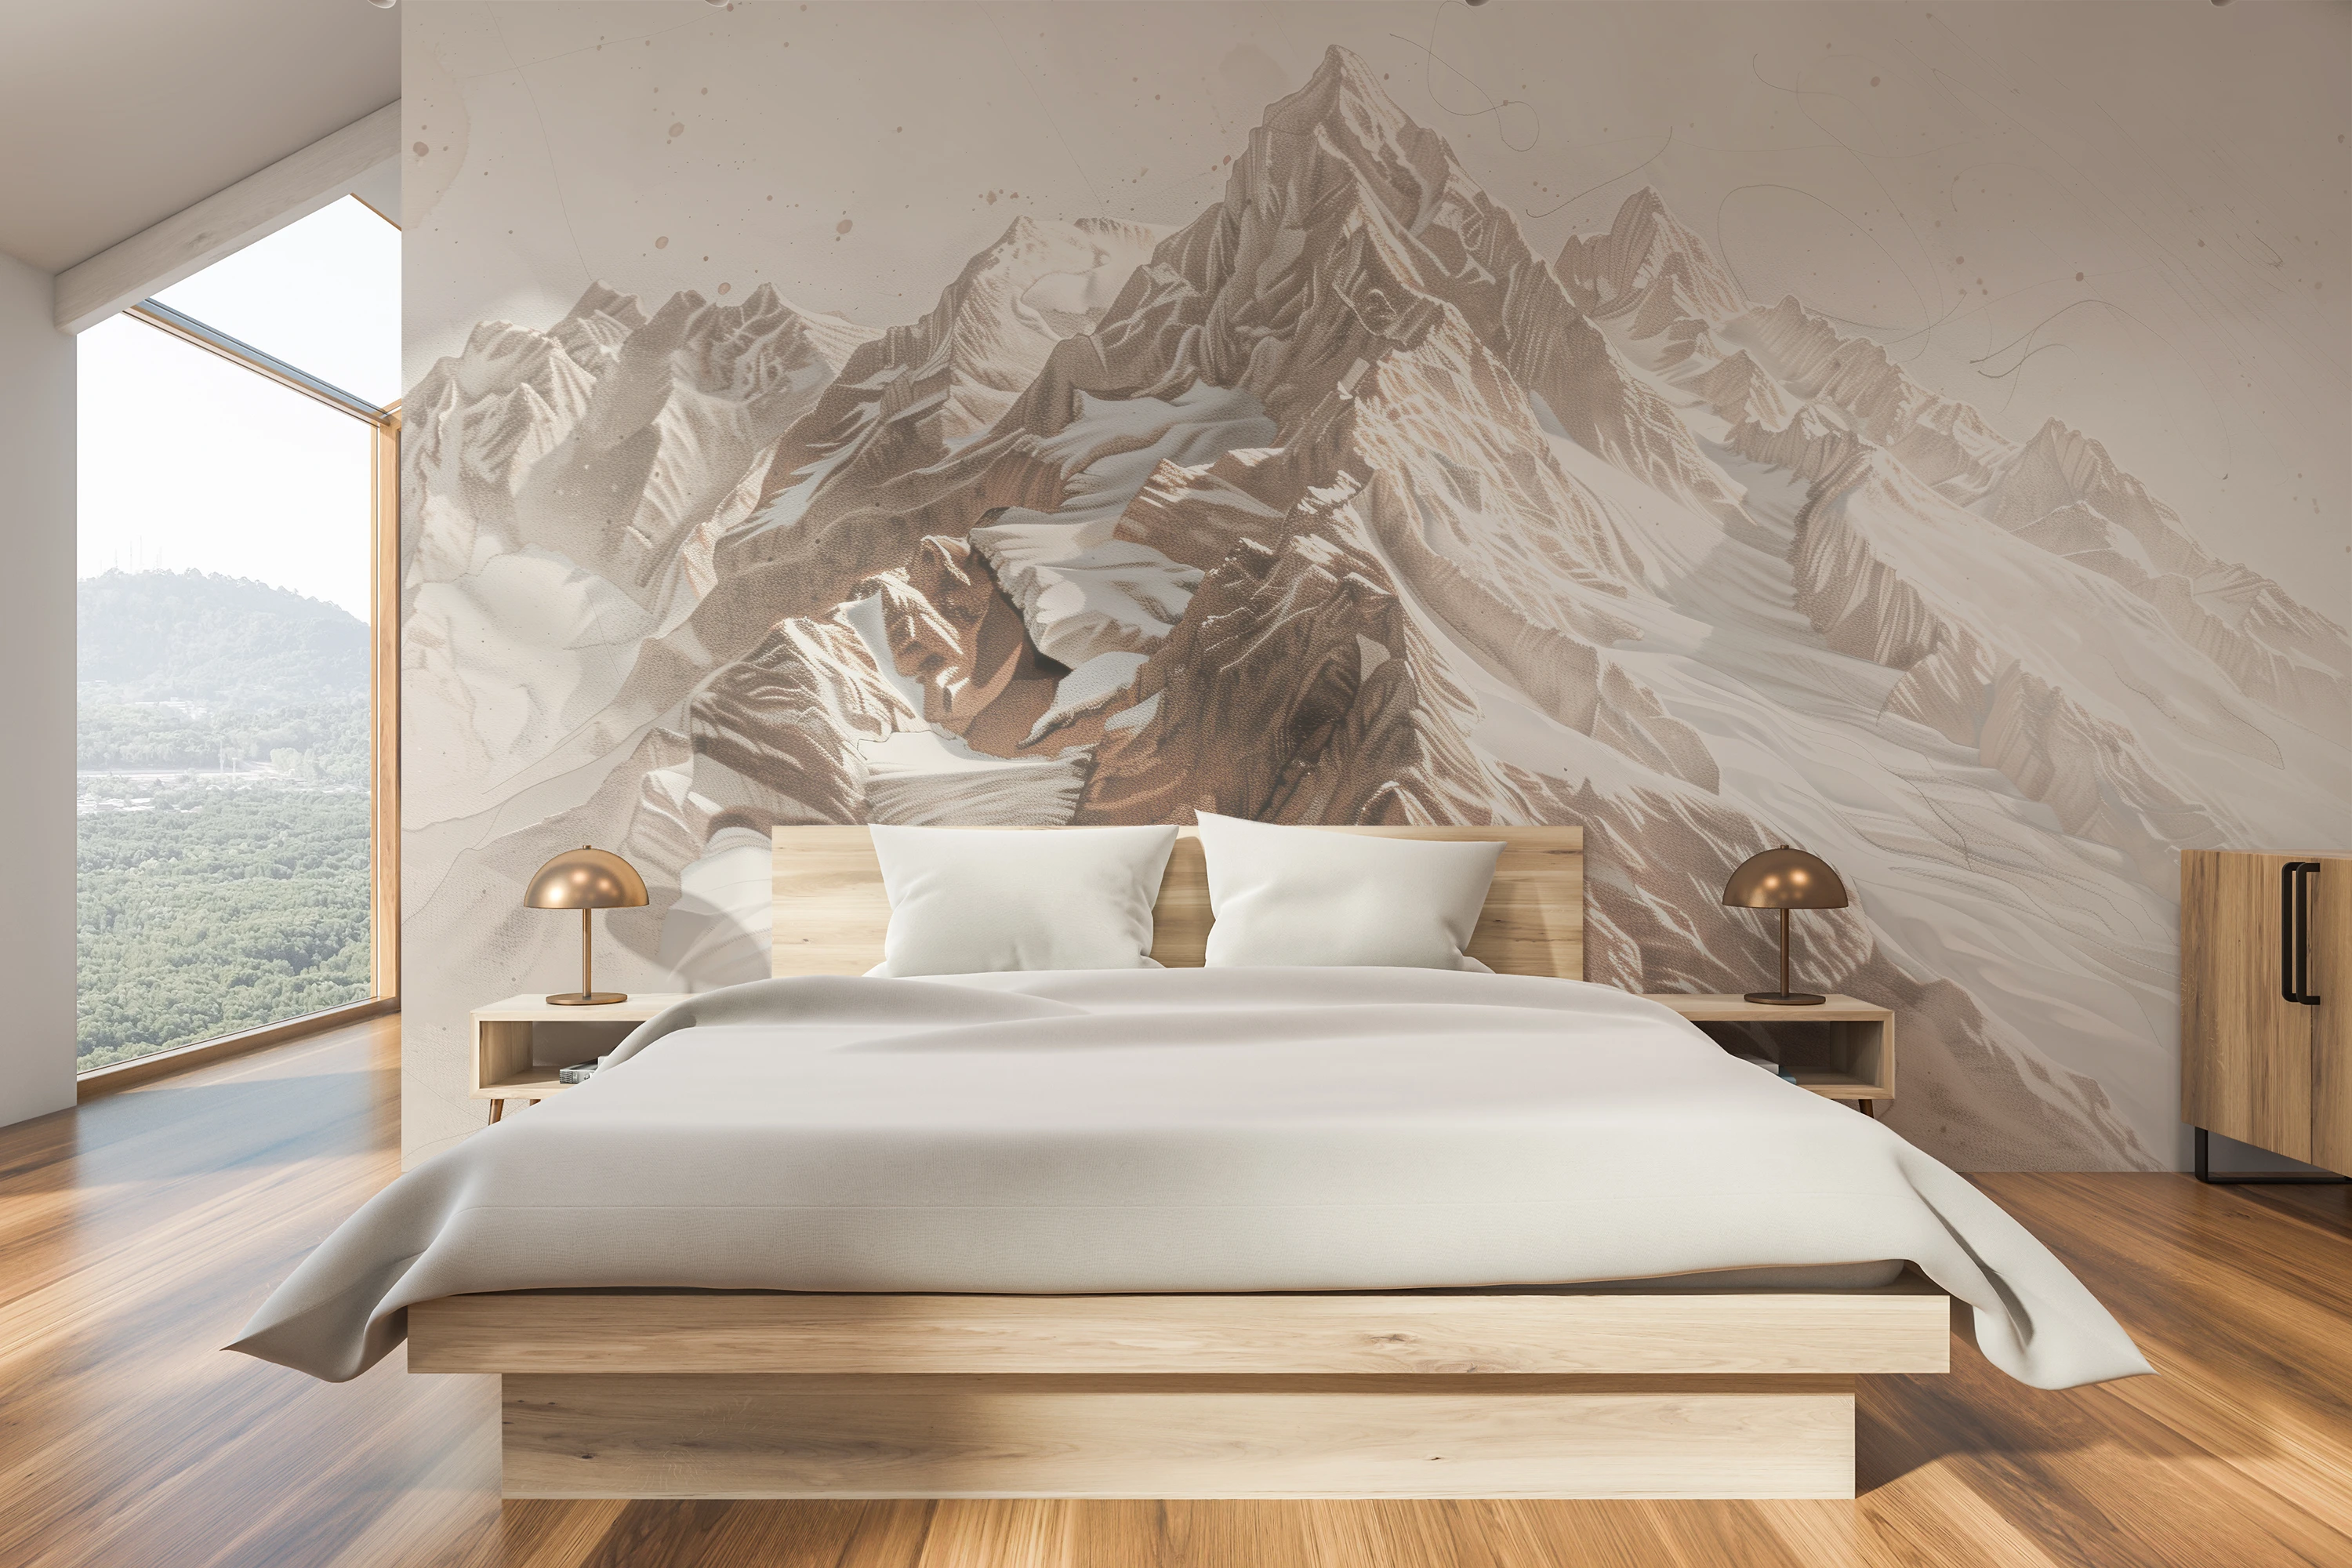 Eine zarte Fototapete, die die raue Schönheit der Berggipfel in dezenten Beige- und Weißtönen präsentiert, die dem Raum Leichtigkeit und Eleganz verleihen.